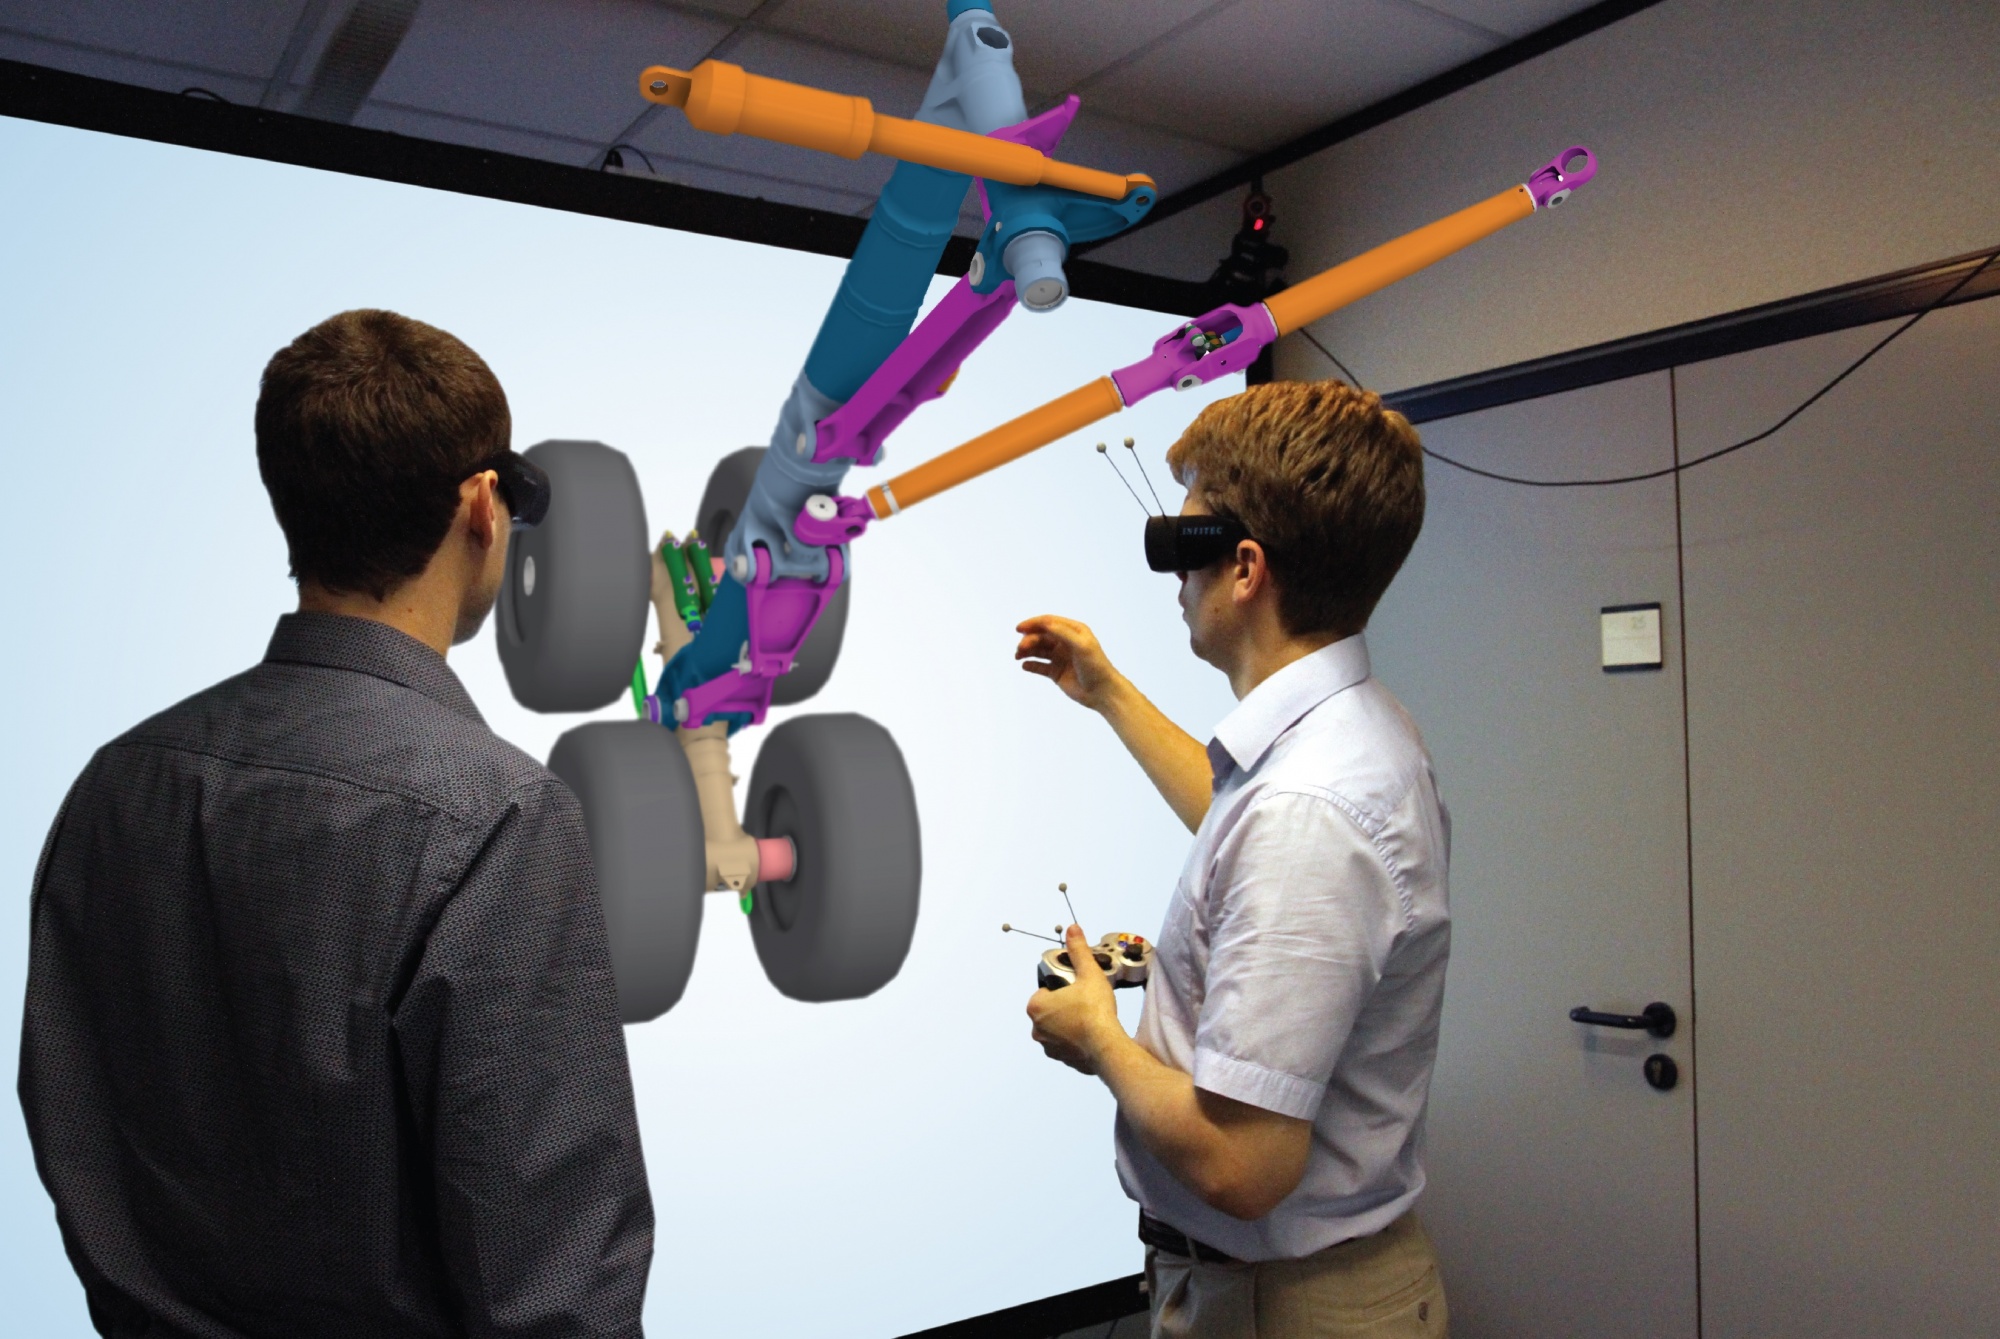 Самолеты vr. Интерактивные технологии VR. Проектирование в виртуальной реальности. Технологии дополненной реальности в образовании. Виртуальная реальность в обучении.